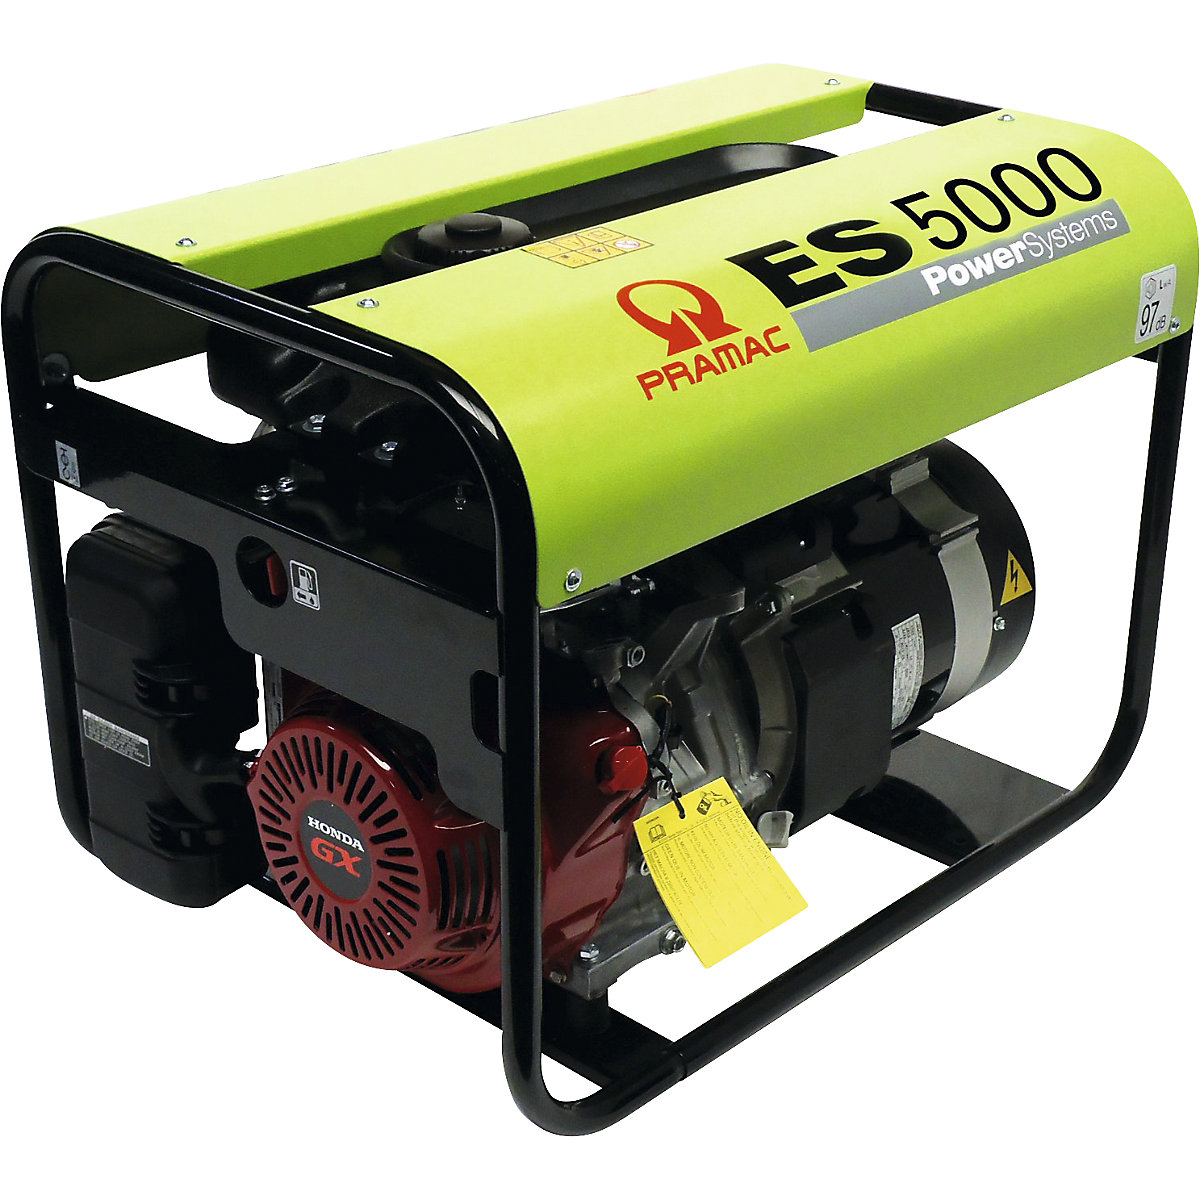 Generador eléctrico serie ES – gasolina, 230 V – Pramac (Imagen del producto 2)-1